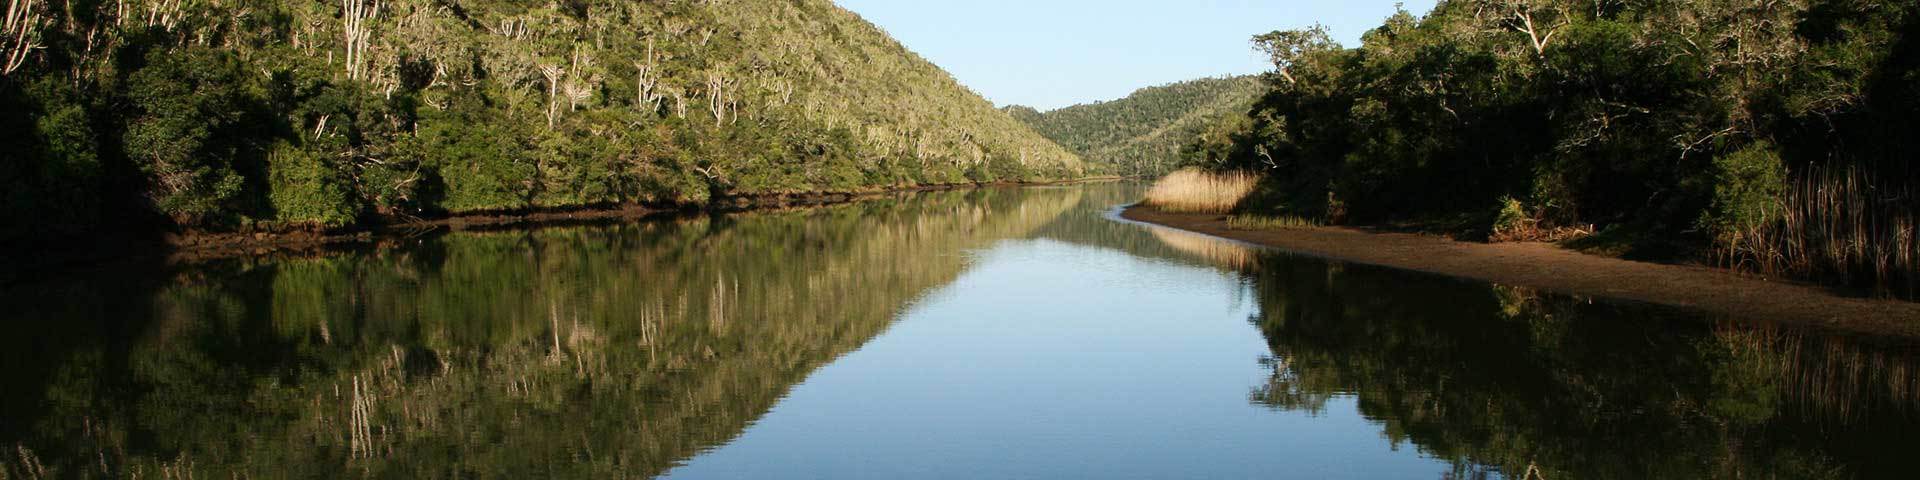 Kariega River View